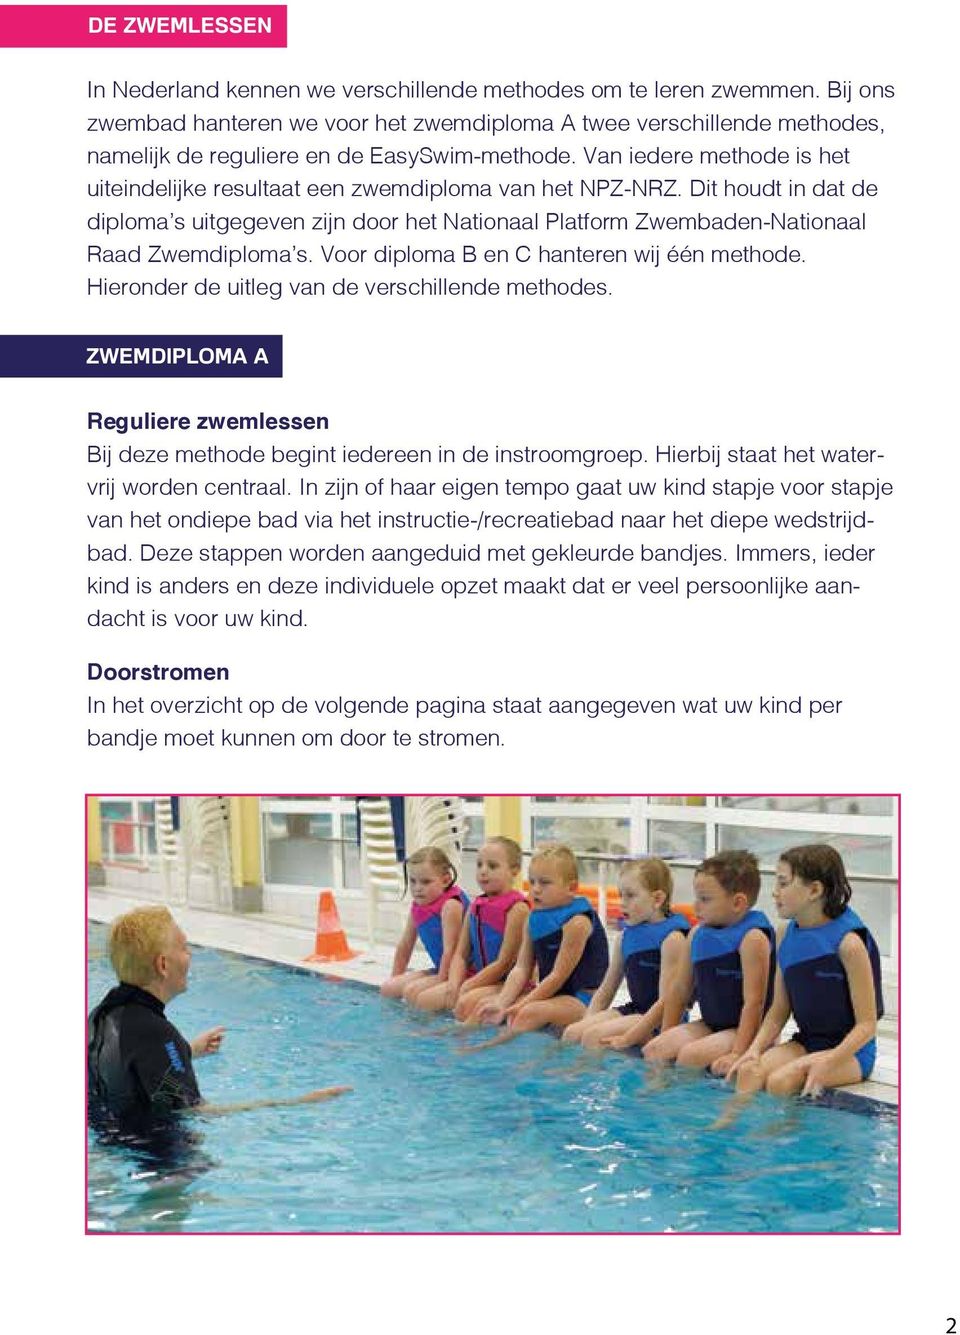 Van iedere methode is het uiteindelijke resultaat een zwemdiploma van het NPZ-NRZ. Dit houdt in dat de diploma s uitgegeven zijn door het Nationaal Platform Zwembaden-Nationaal Raad Zwemdiploma s.